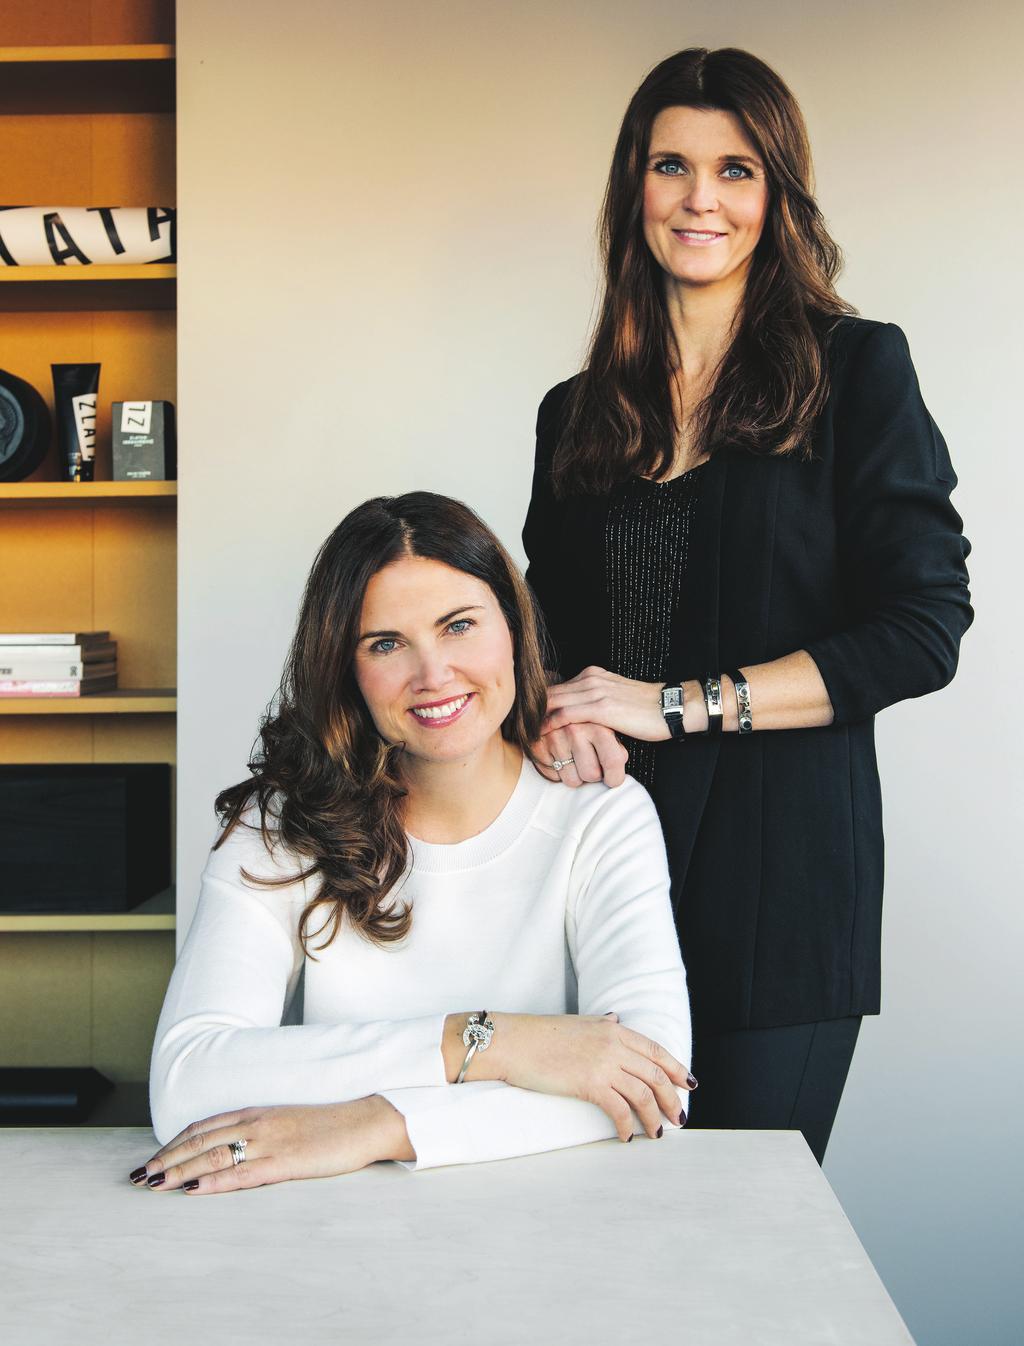 Denna sida: Jessica Dersén och Marie Klockare Carlzon ligger bakom skönhetsbolaget Amazing brands som